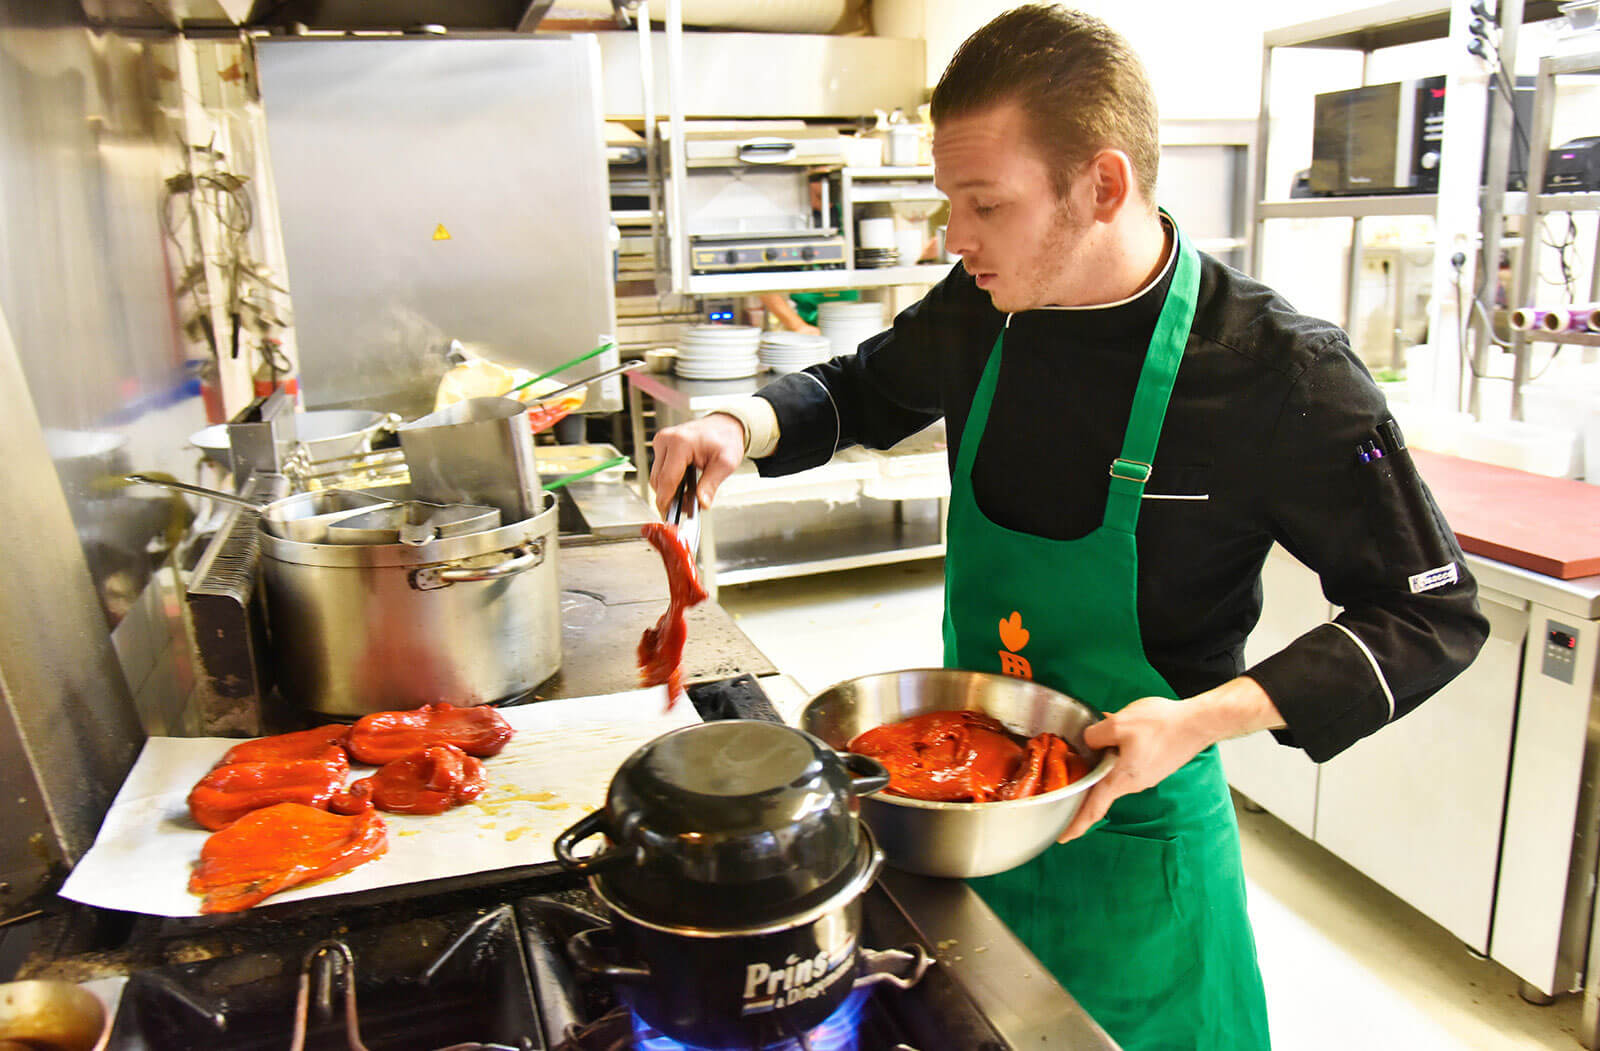 Dans une cuisine de collectivité, un homme met des morceaux de viande dans un plat. Il porte un tablier vert avec une carotte orange.